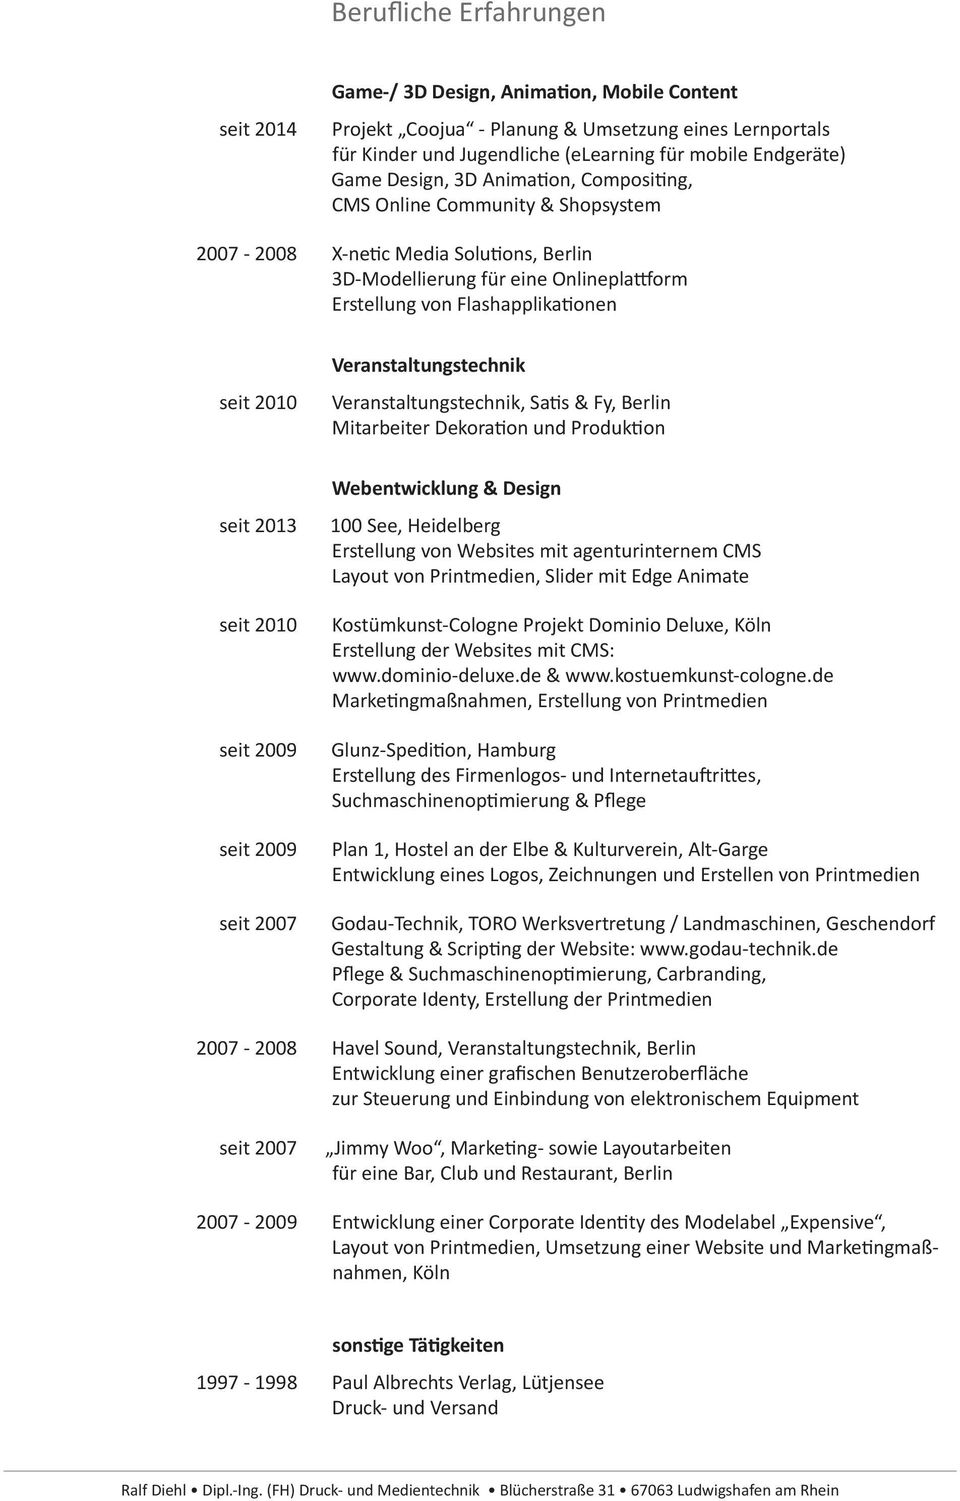 2010 Veranstaltungstechnik Veranstaltungstechnik, Satis & Fy, Berlin Mitarbeiter Dekoration und Produktion seit 2013 seit 2010 seit 2009 seit 2009 seit 2007 2007-2008 seit 2007 2007-2009